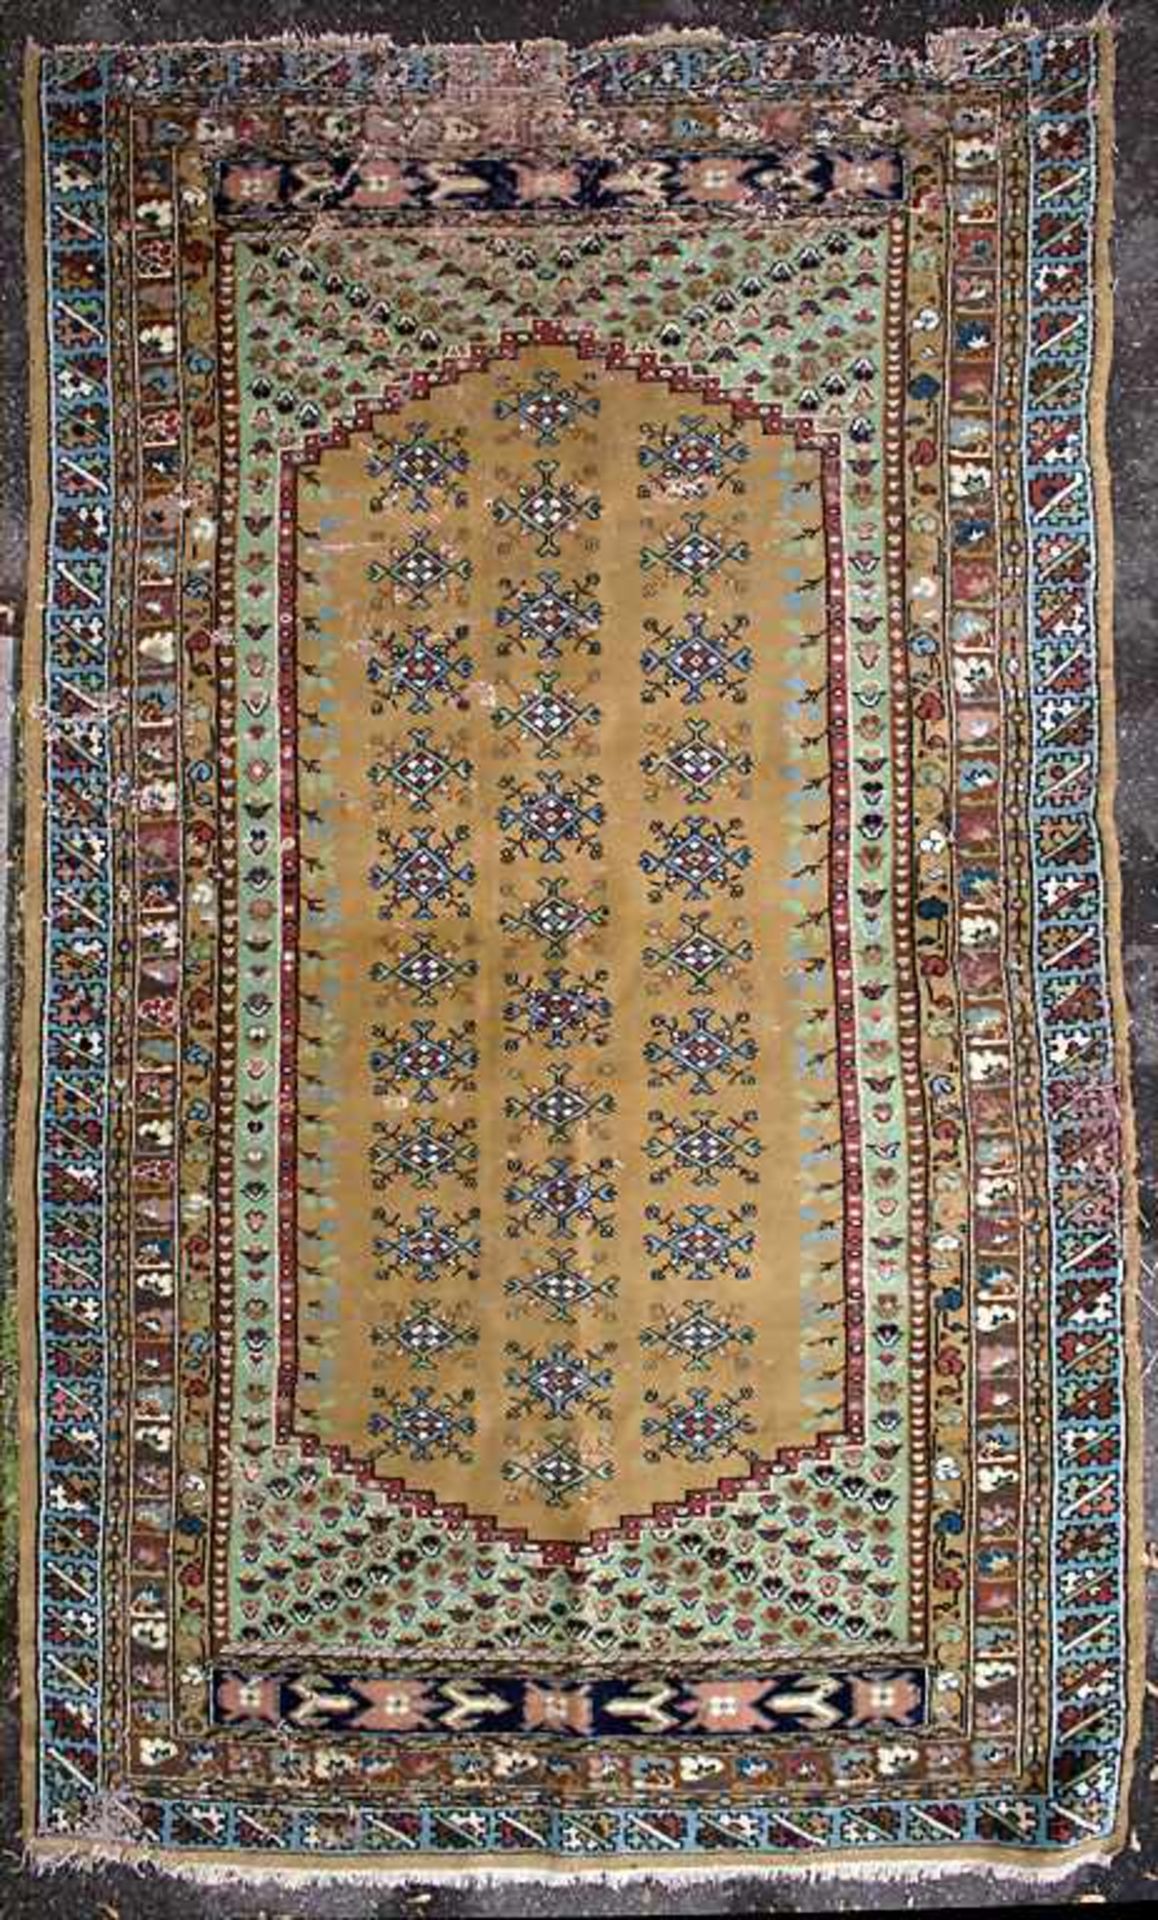 Orientteppich / An oriental carpetMaterial: Wolle auf Baumwolle, Maße: 242 x 140 cm, Zustand: